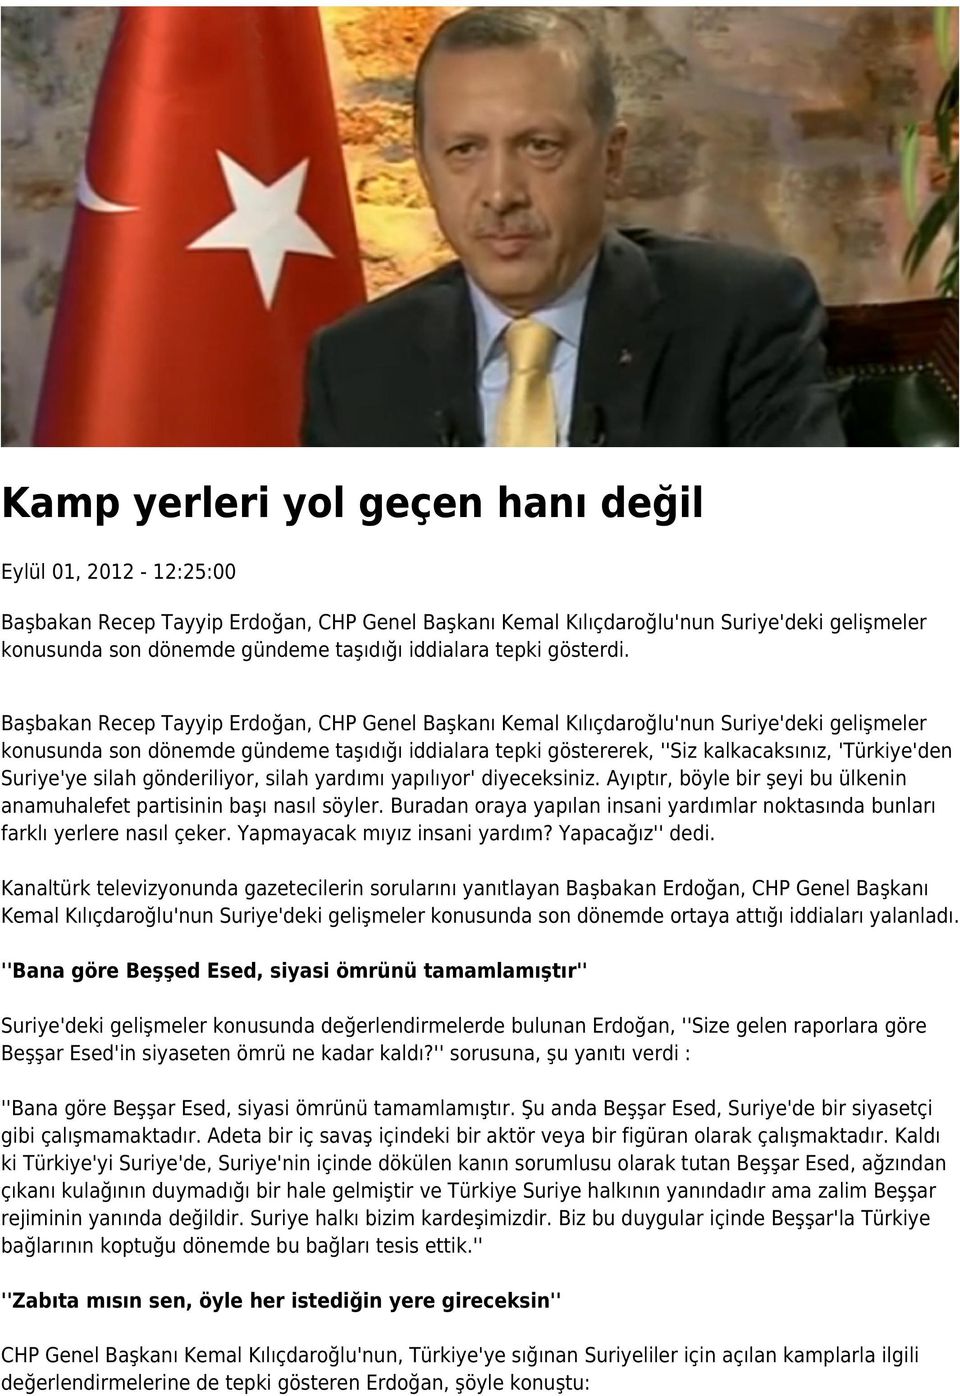 Başbakan Recep Tayyip Erdoğan, CHP Genel Başkanı Kemal Kılıçdaroğlu'nun Suriye'deki gelişmeler konusunda son dönemde gündeme taşıdığı iddialara tepki göstererek, ''Siz kalkacaksınız, 'Türkiye'den